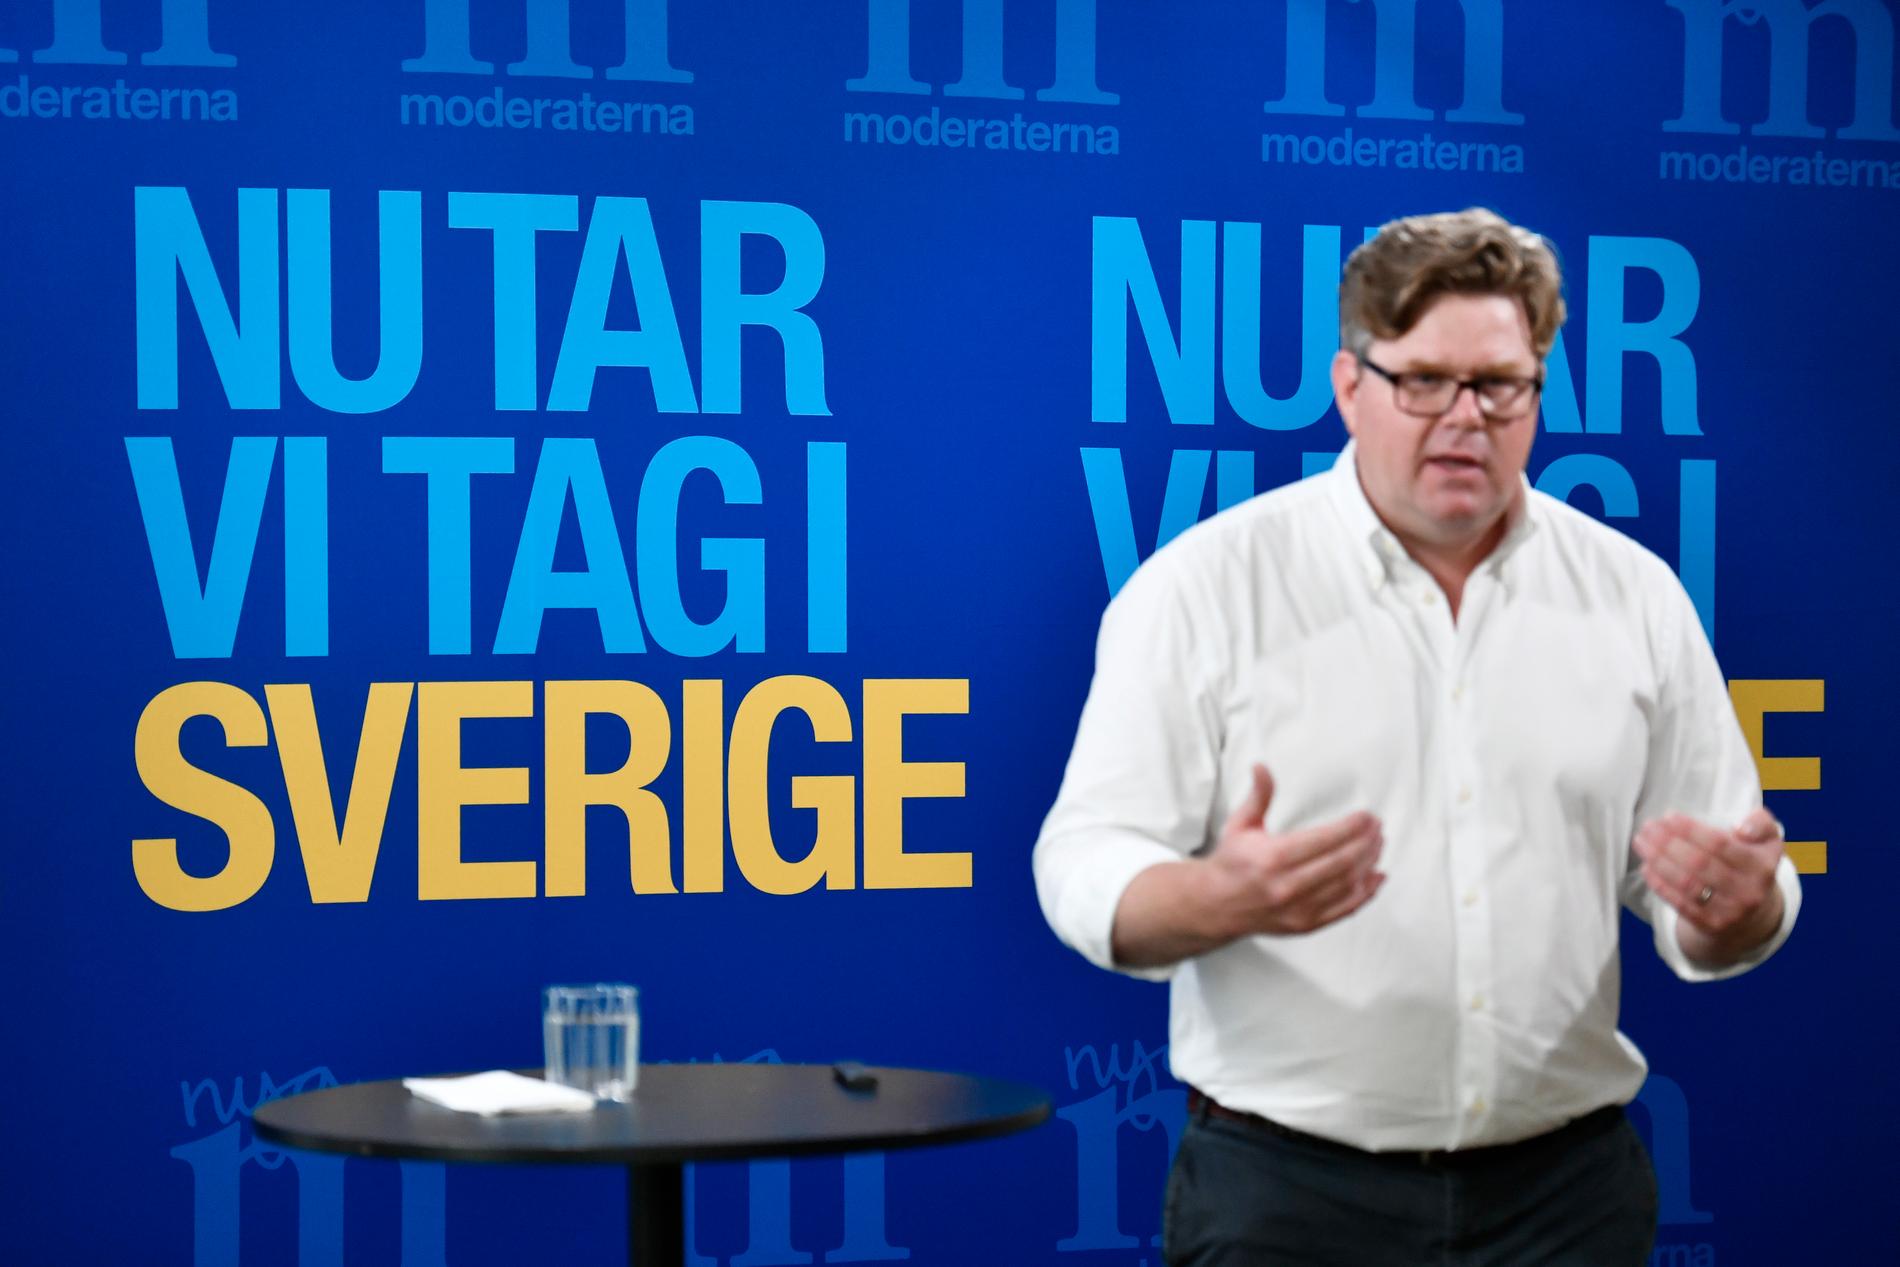 Moderaternas partisekreterare Gunnar Strömmer presenterar partiets valaffischer och valstrategier under en pressträff på partikansliet i Stockholm.